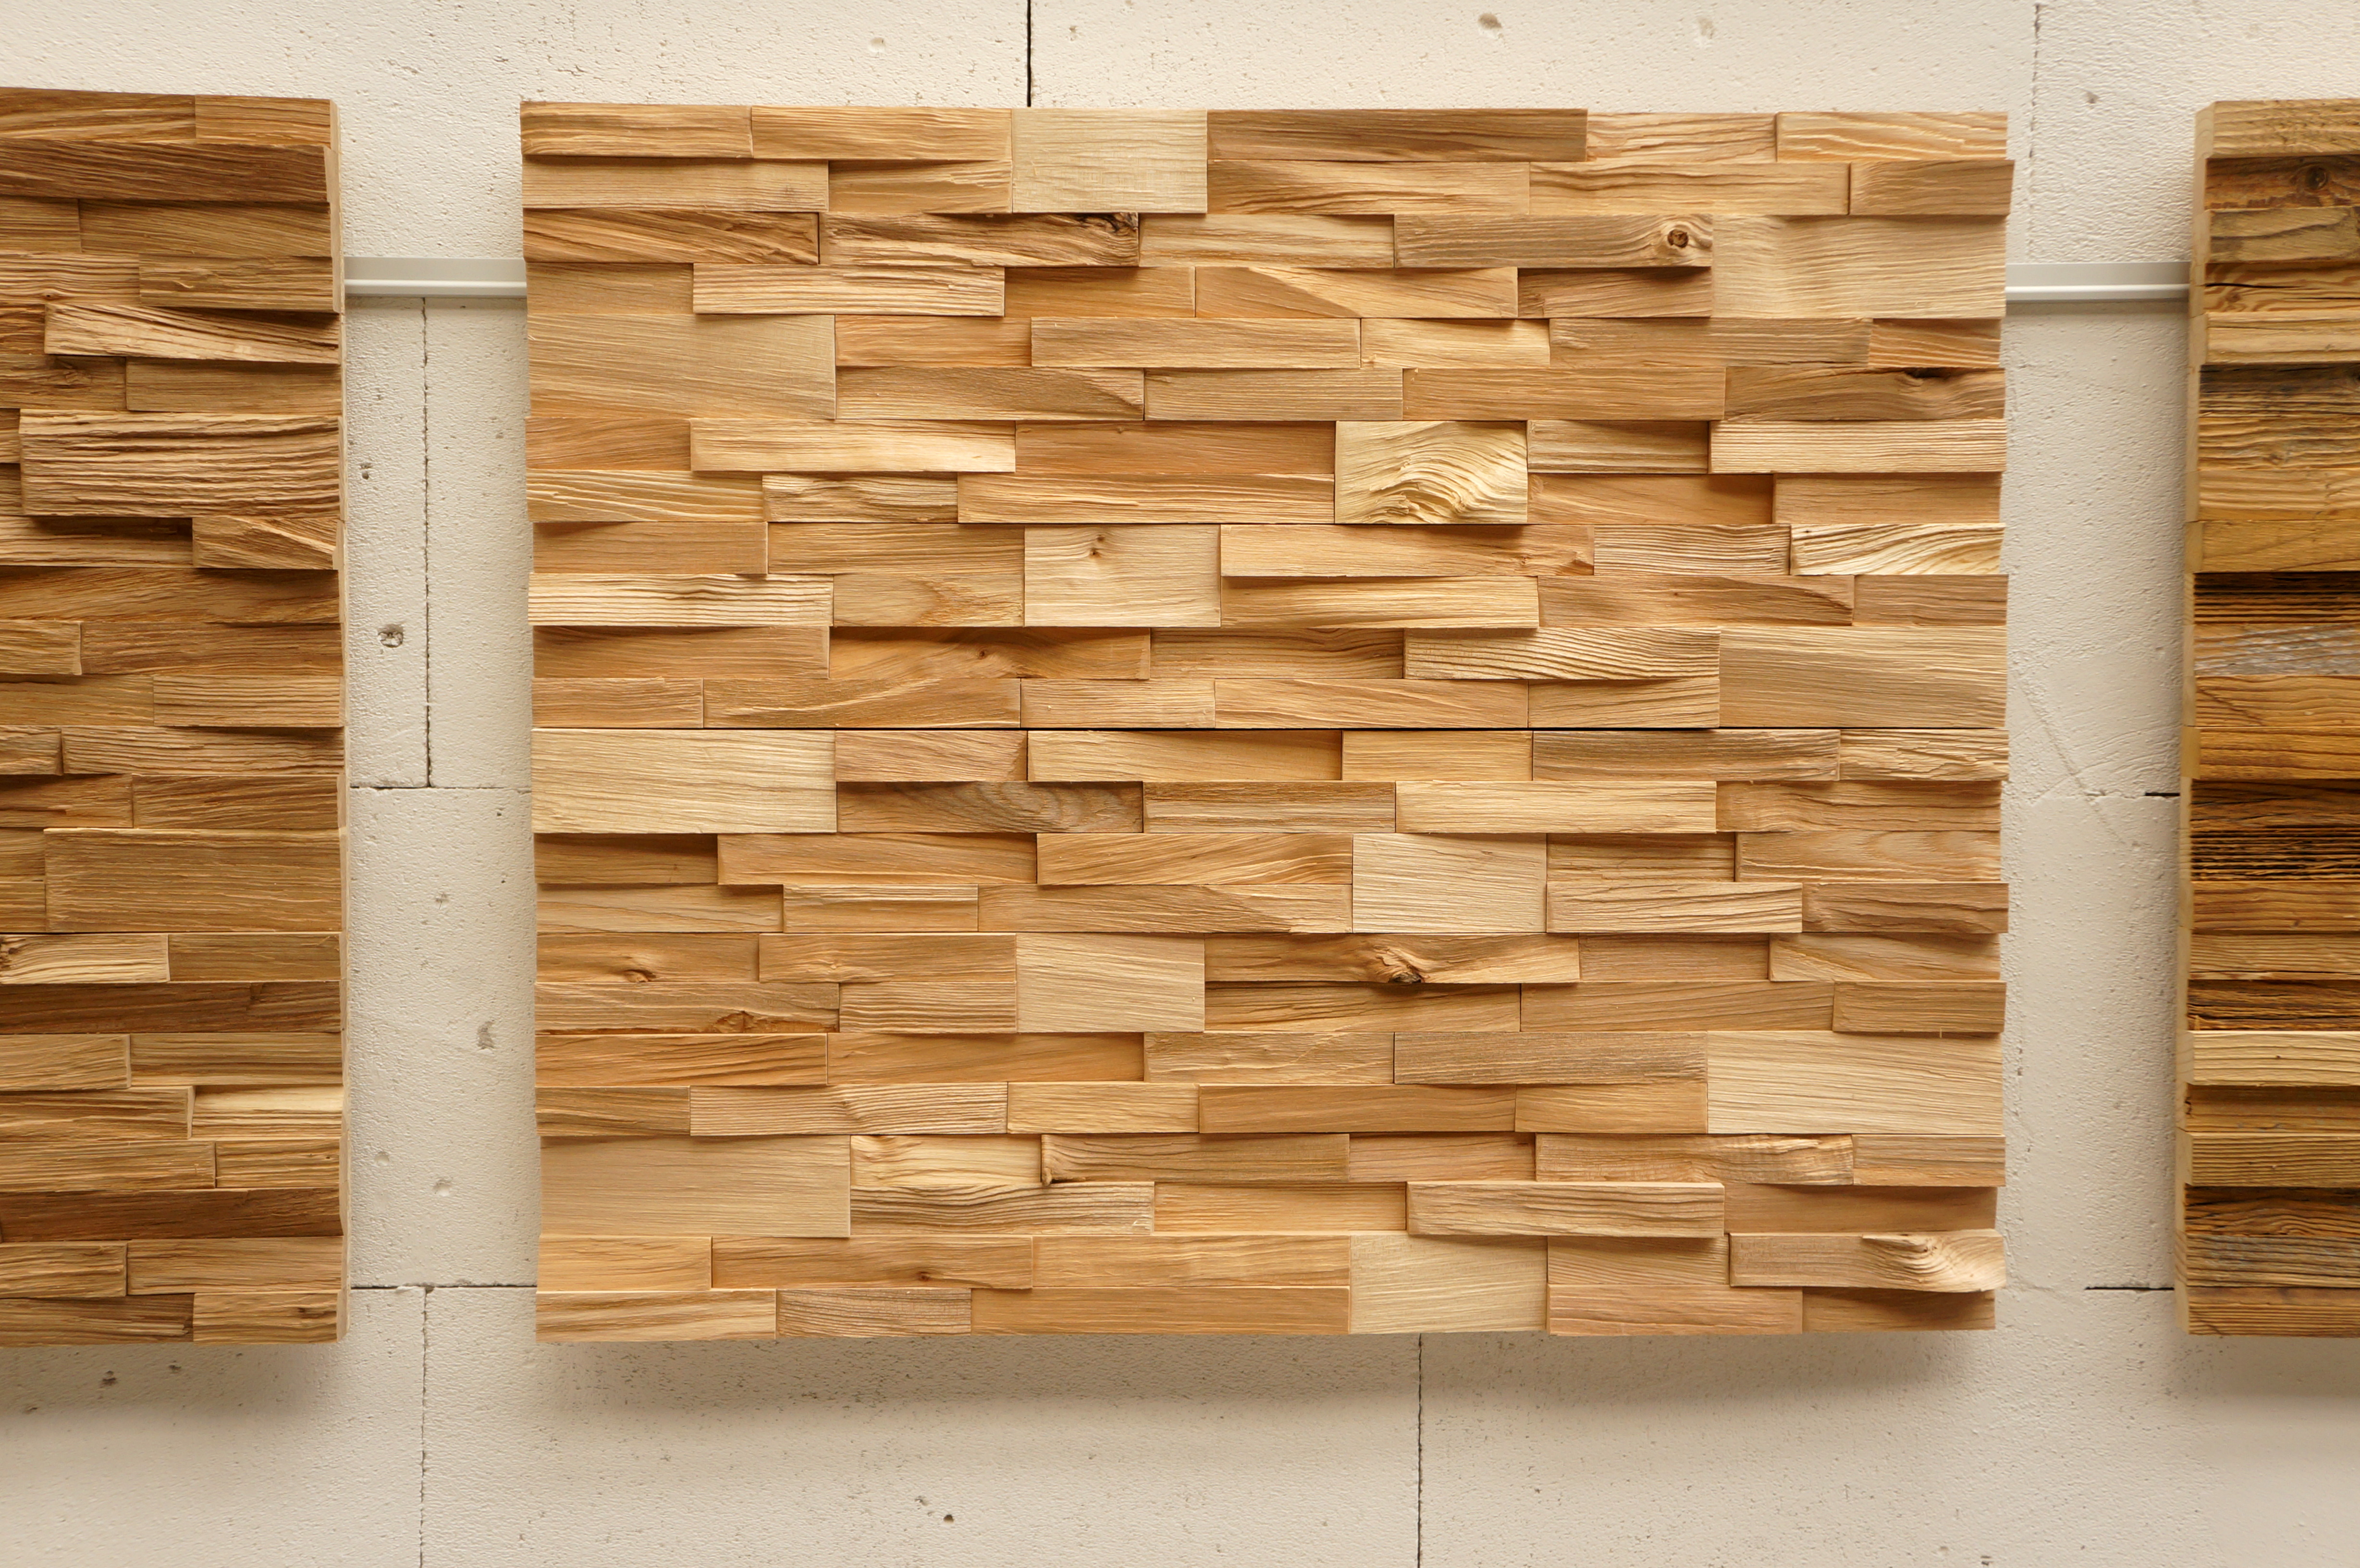 Verblender 3D Wandverkleidung Wand Paneele Dekorplatte Echtholz Holzfliesen Holz 